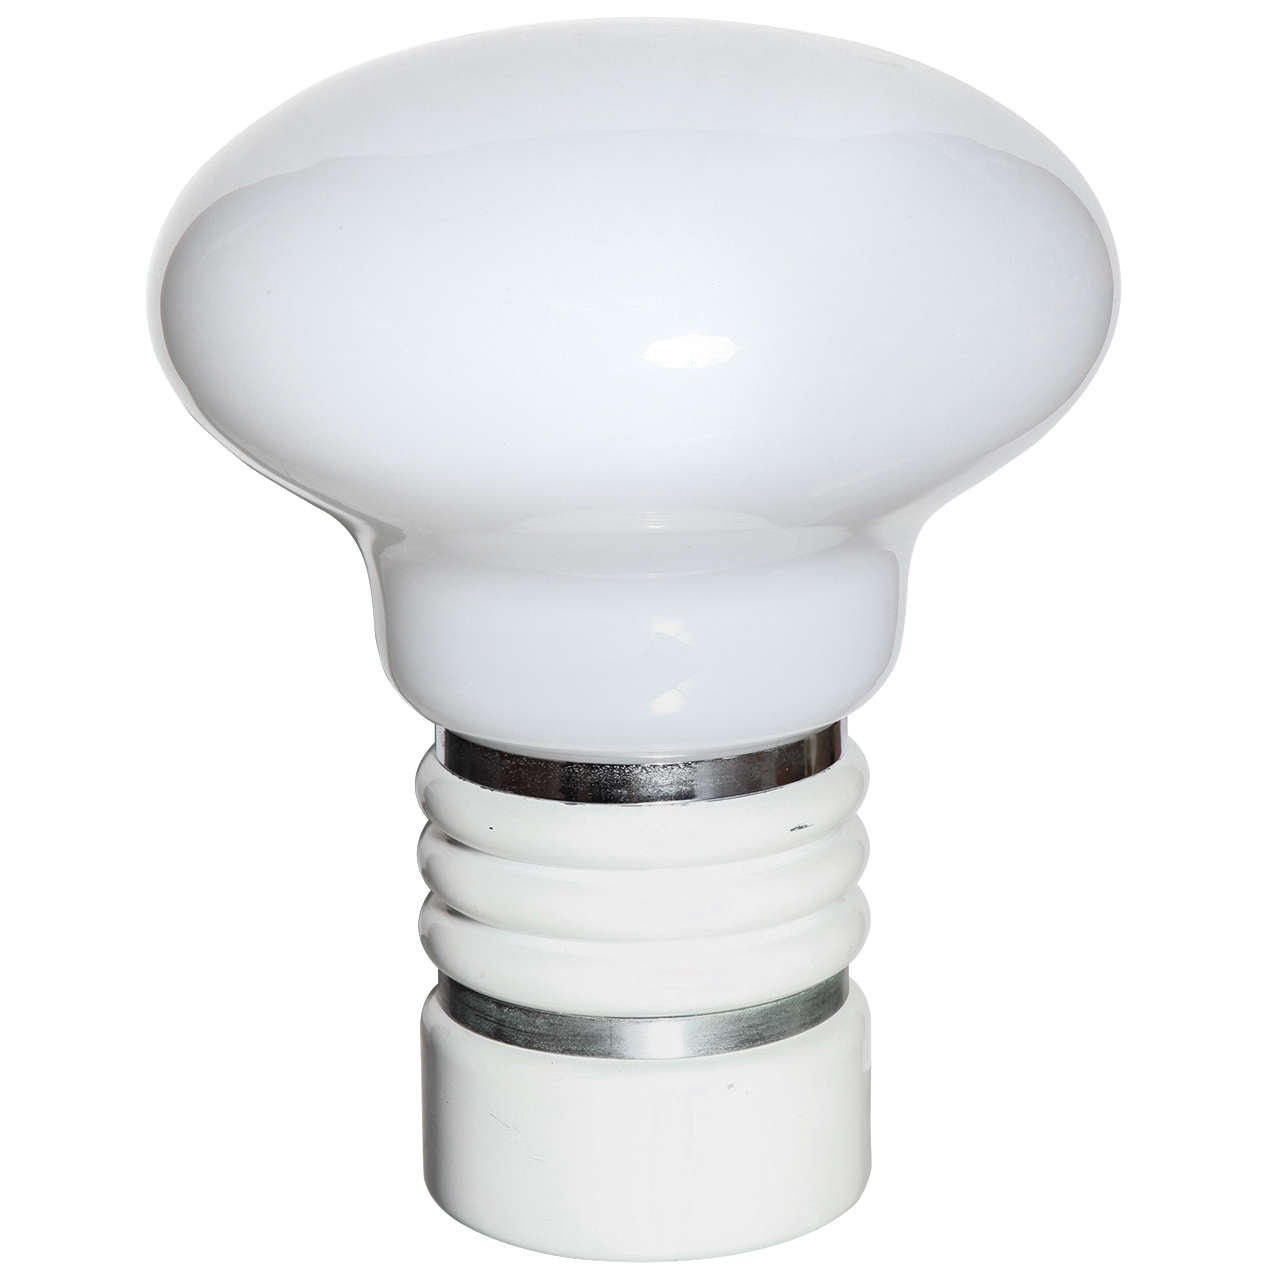 Mazzega Murano Style White Glass & Chrome "Lightbulb" Table Lamp, 1970's For Sale